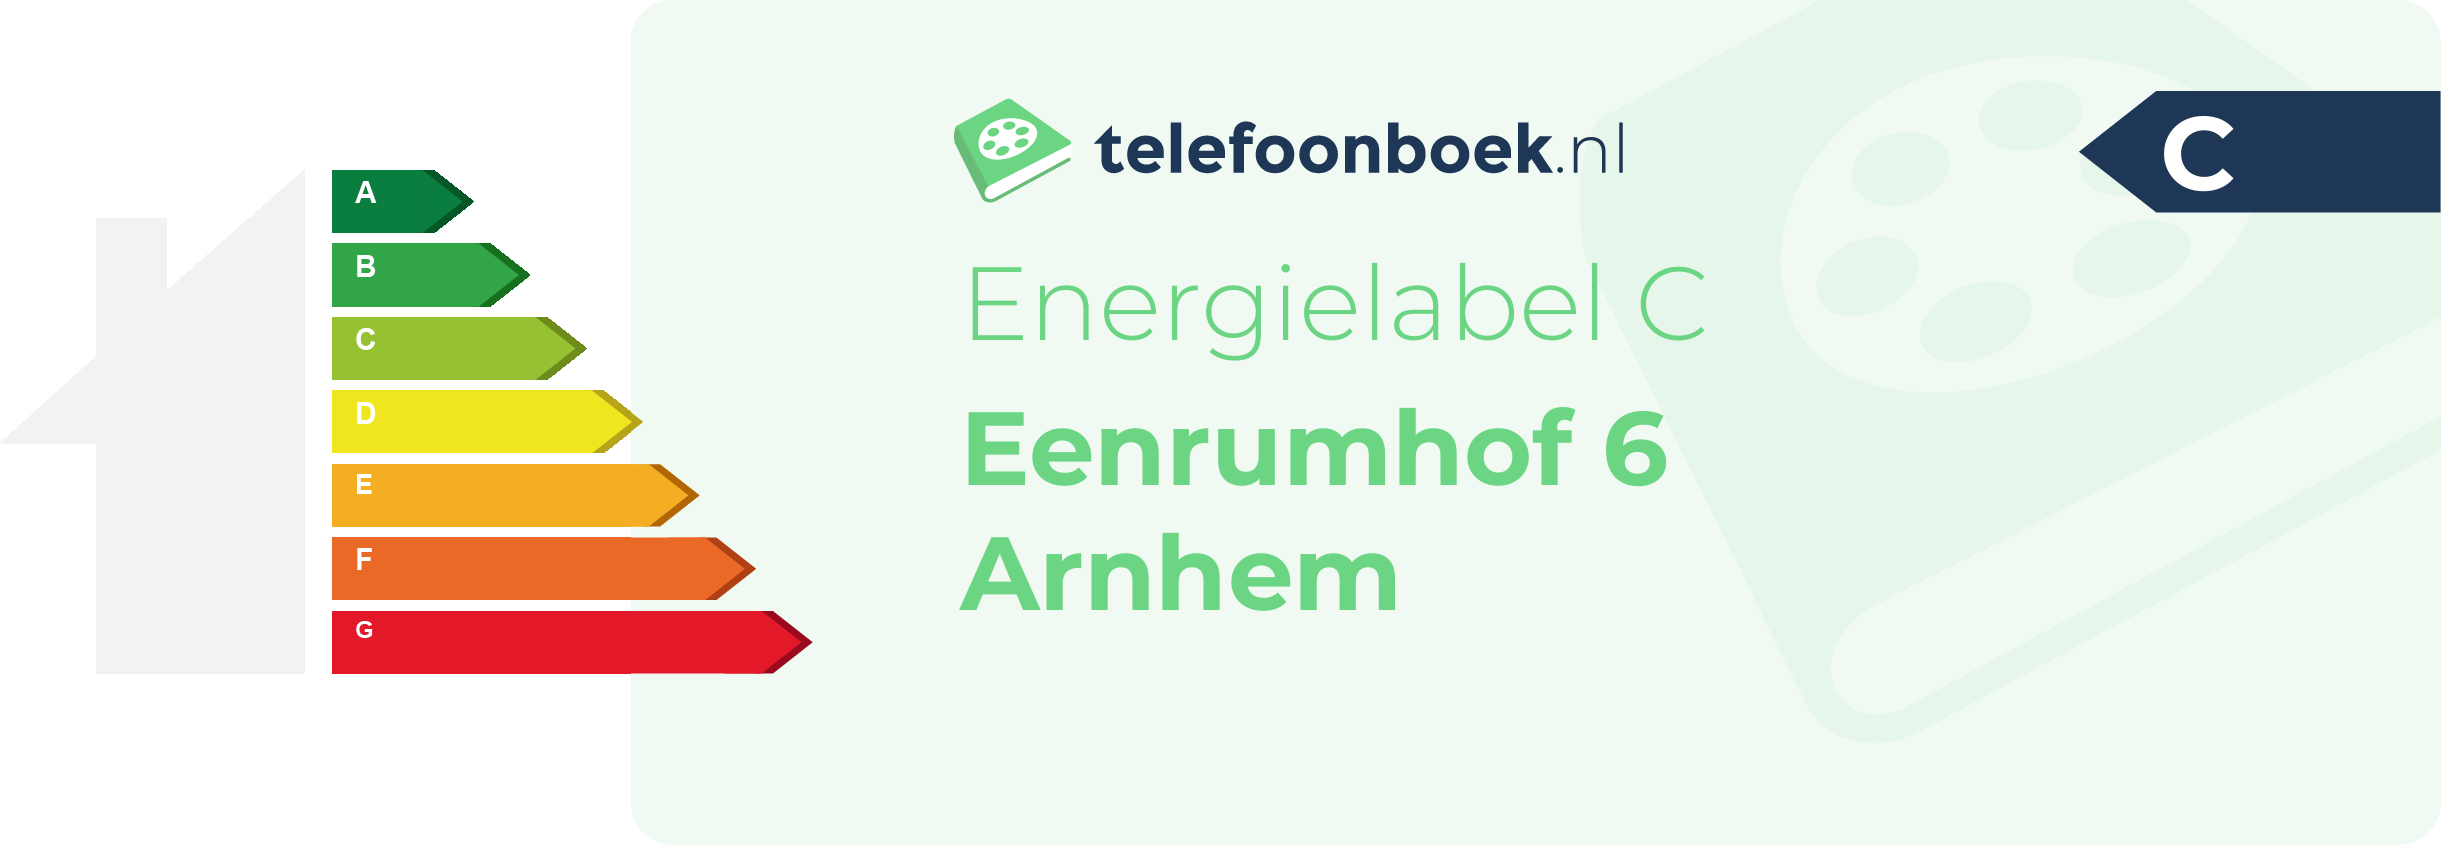 Energielabel Eenrumhof 6 Arnhem